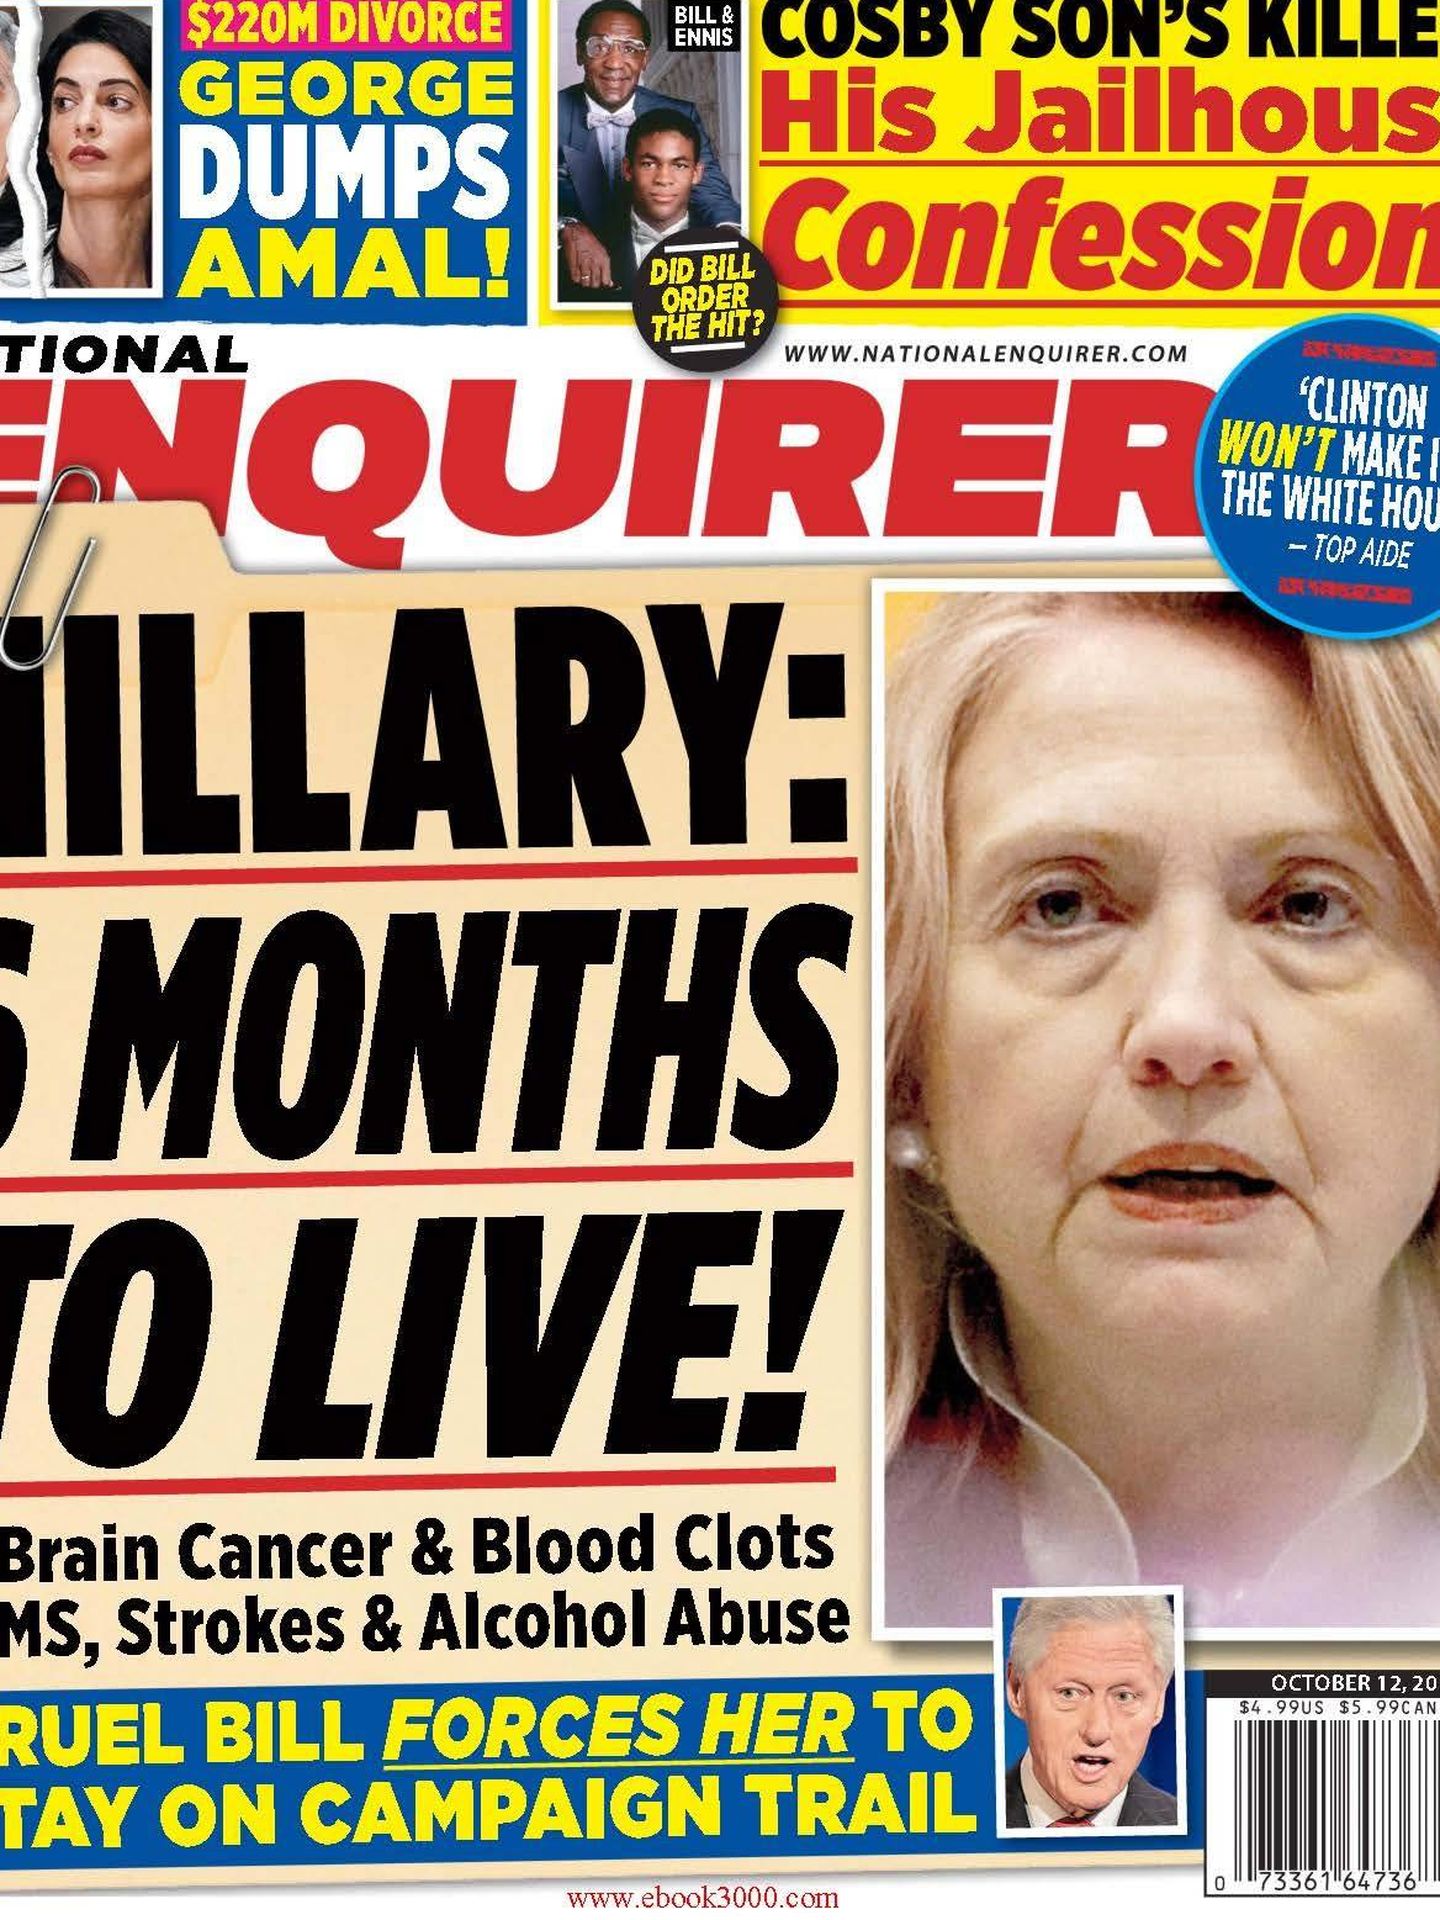 Hillary acabada, una de las obesiones del 'Enquirer'.


